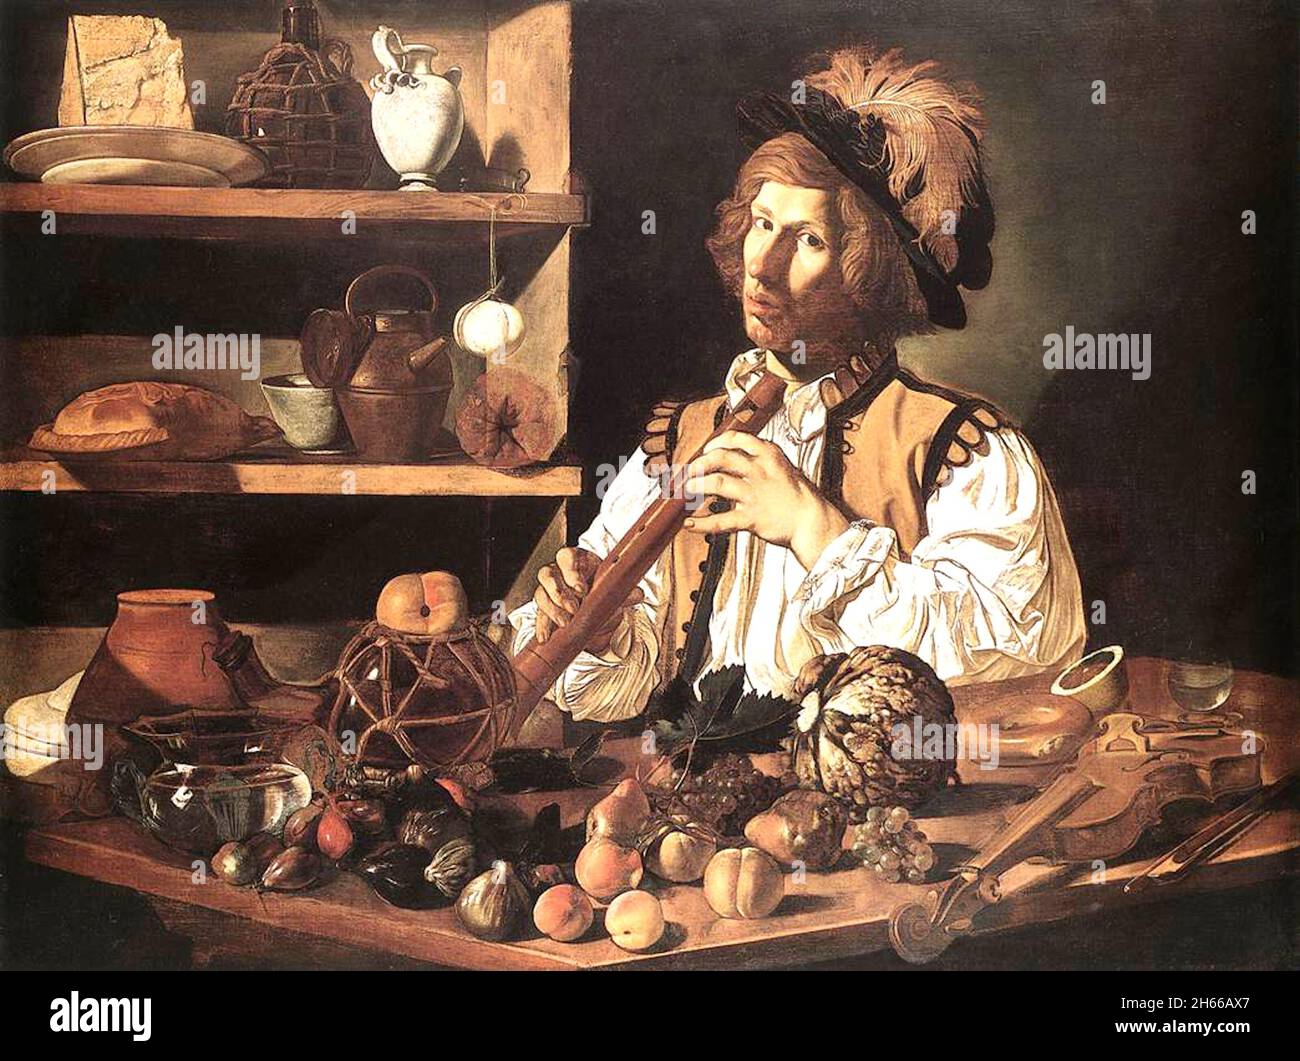 Le joueur de flûte - Cecco del Caravaggio - vers 1620 Banque D'Images